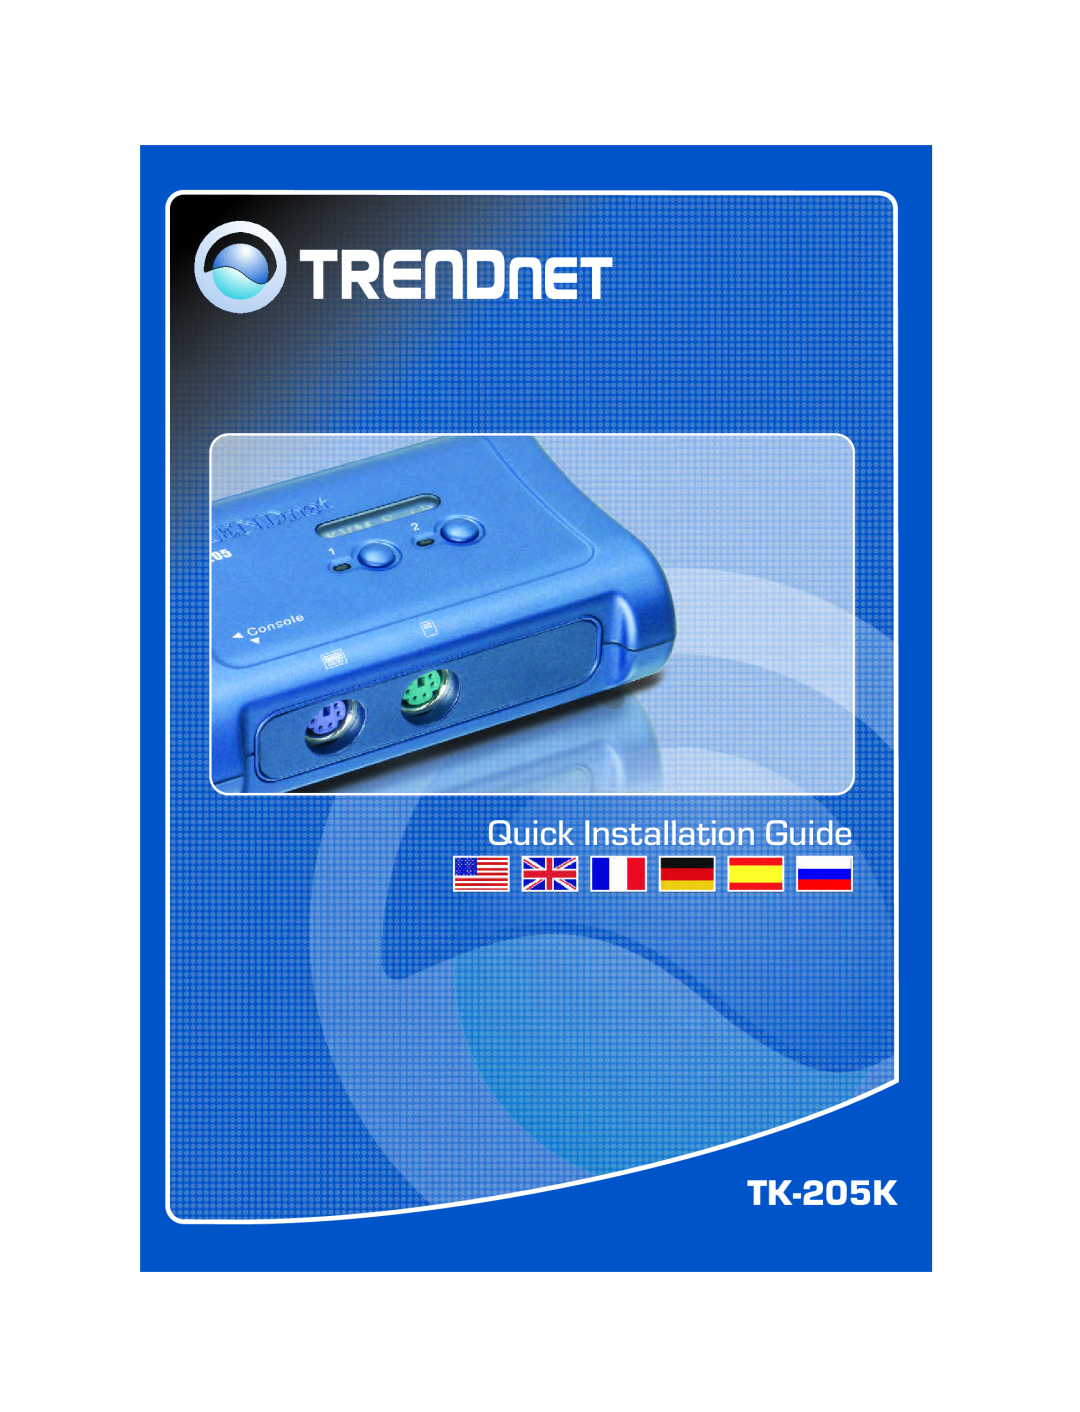 TRENDnet TK-205K manual Quick Installation Guide 